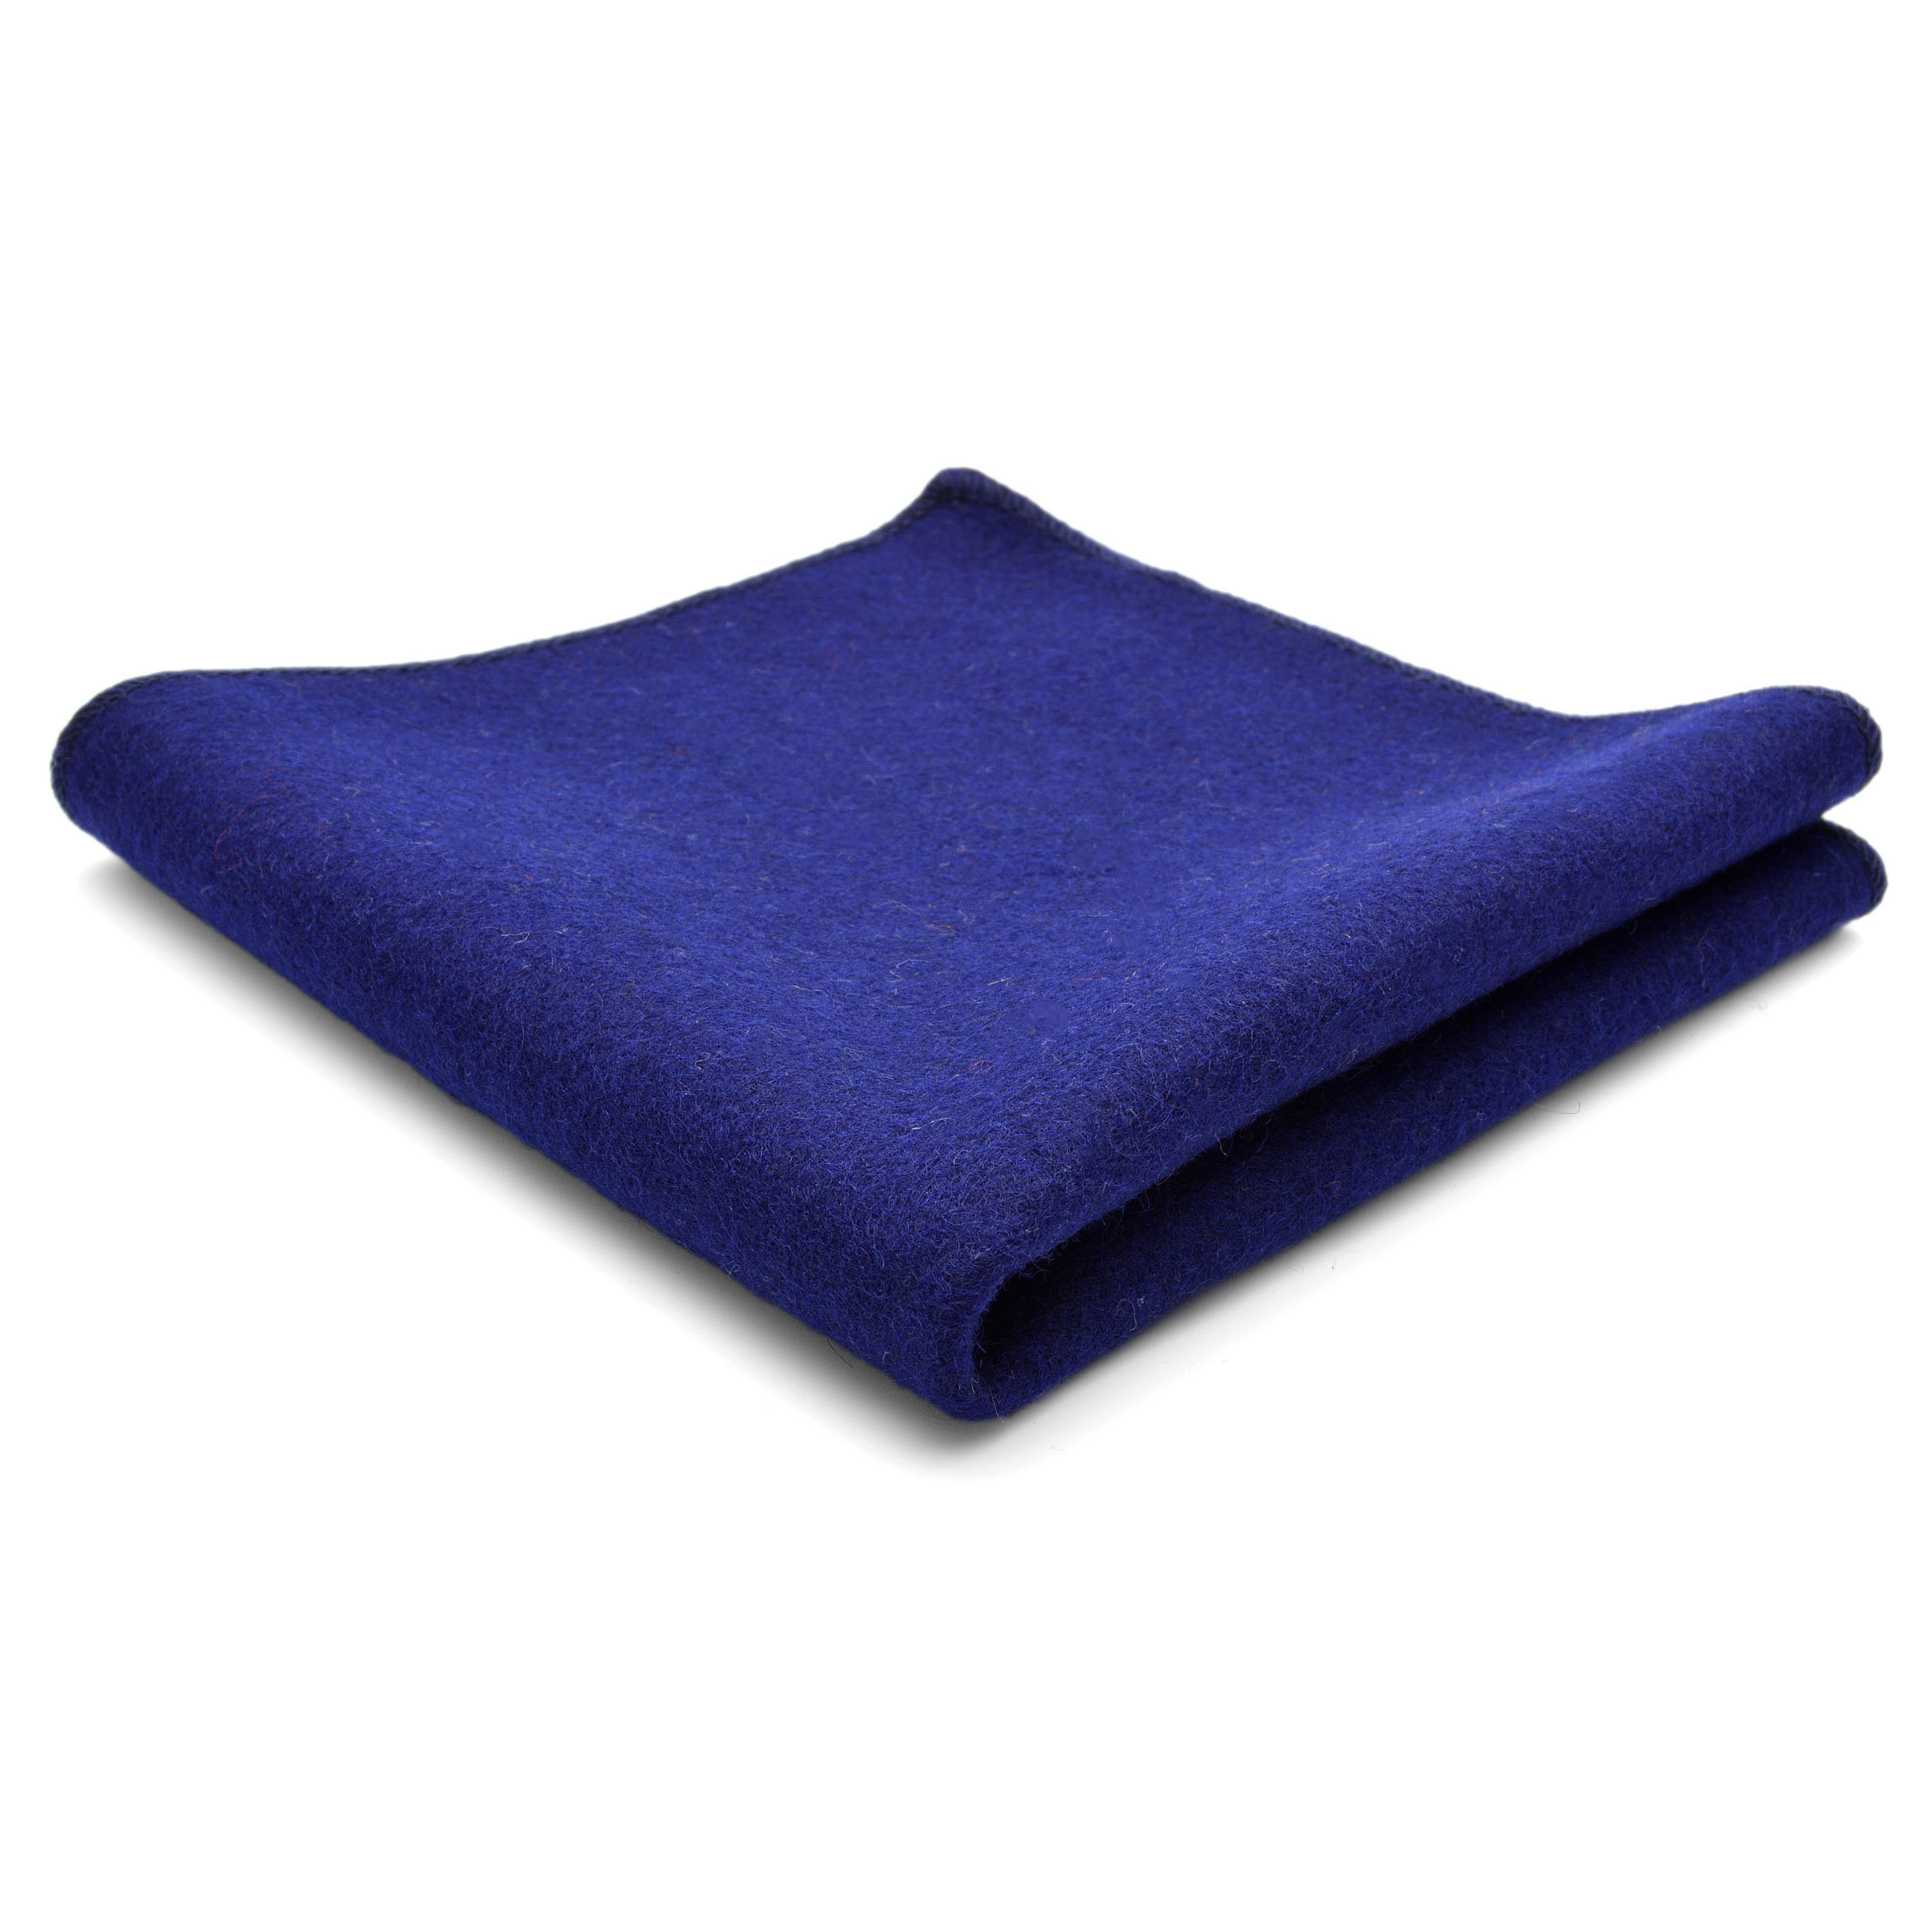 Pochette de costume en laine bleue, coutures à la main